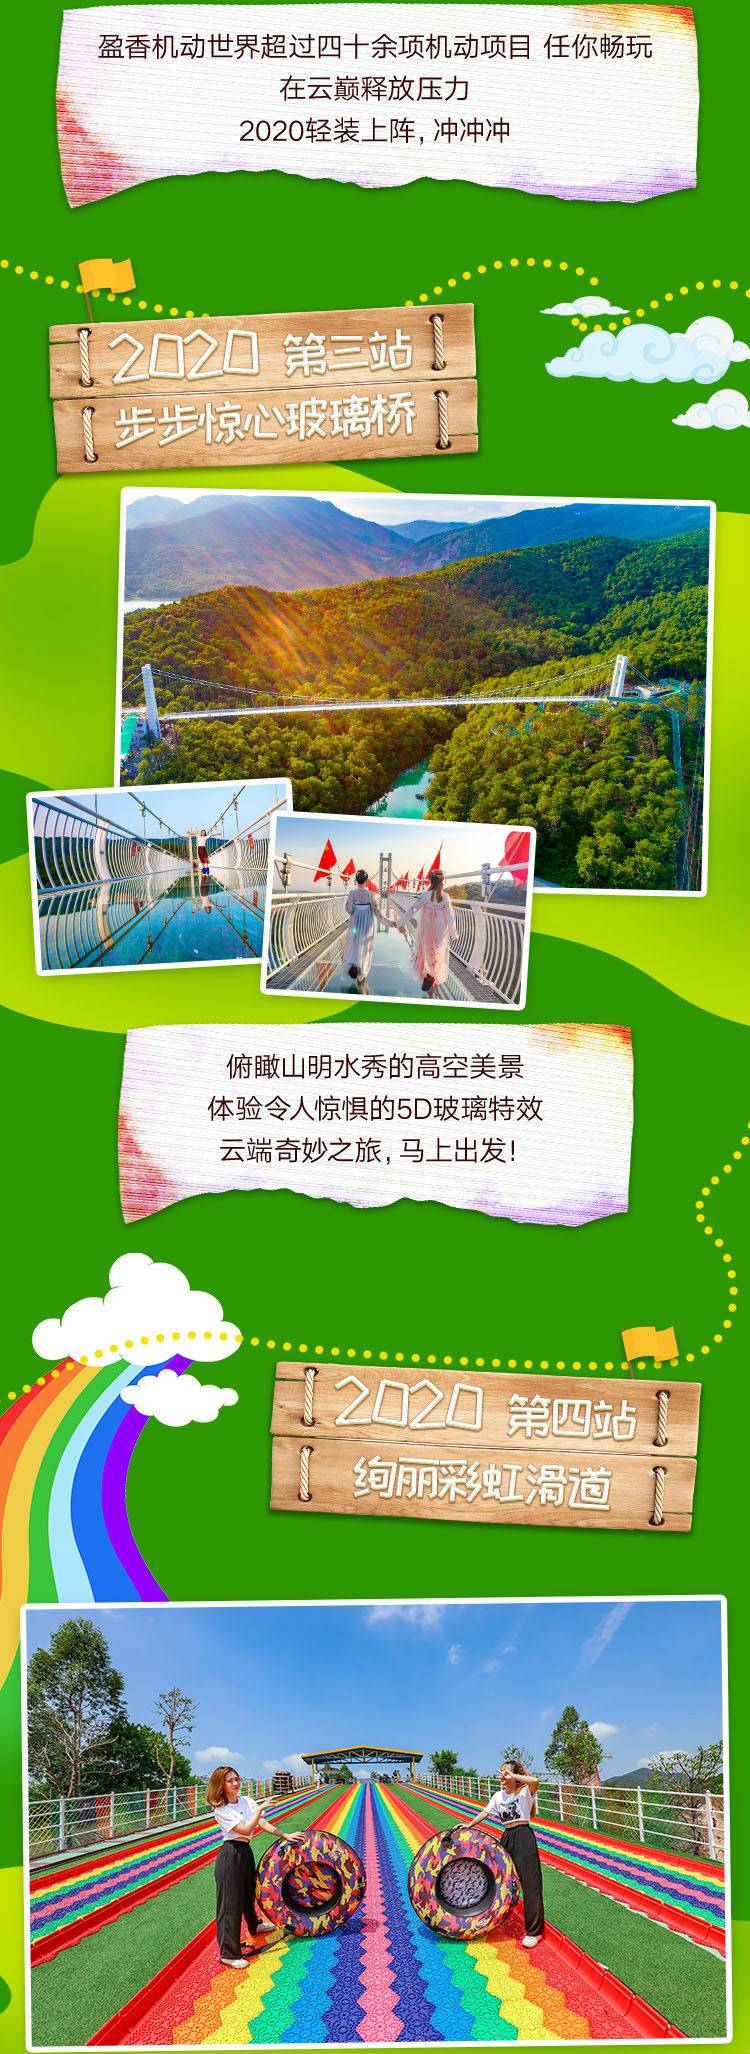 【常规票】盈香生态园儿童票1张含机动游戏+四季花海+彩虹滑道